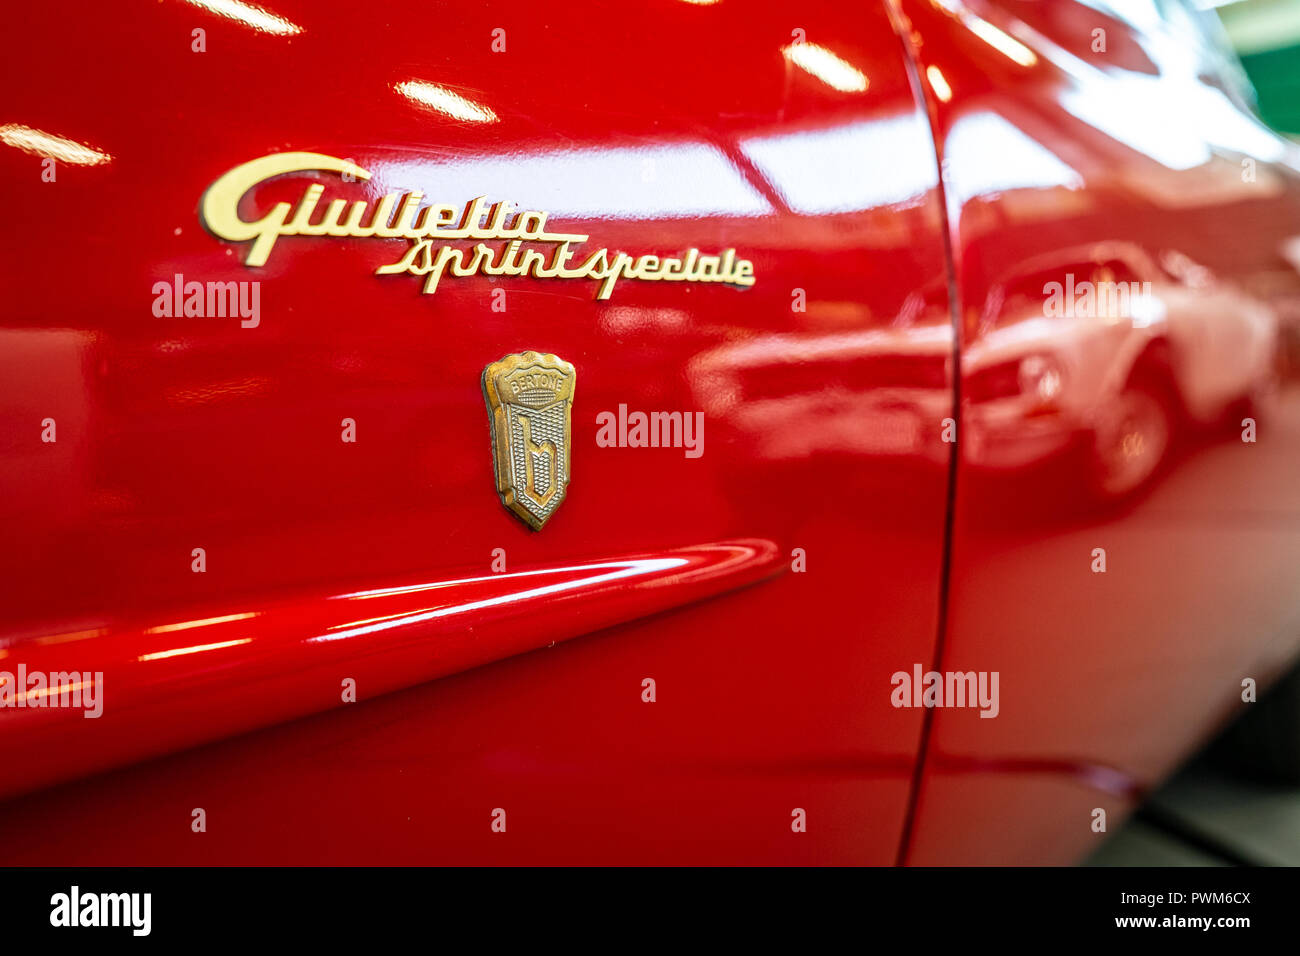 Emblem der Sportwagen Alfa Romeo Giulietta Sprint Speciale. Ansicht von hinten. Karosseriebauer Bertone. Oldtimer-show 2018 sterben. Stockfoto